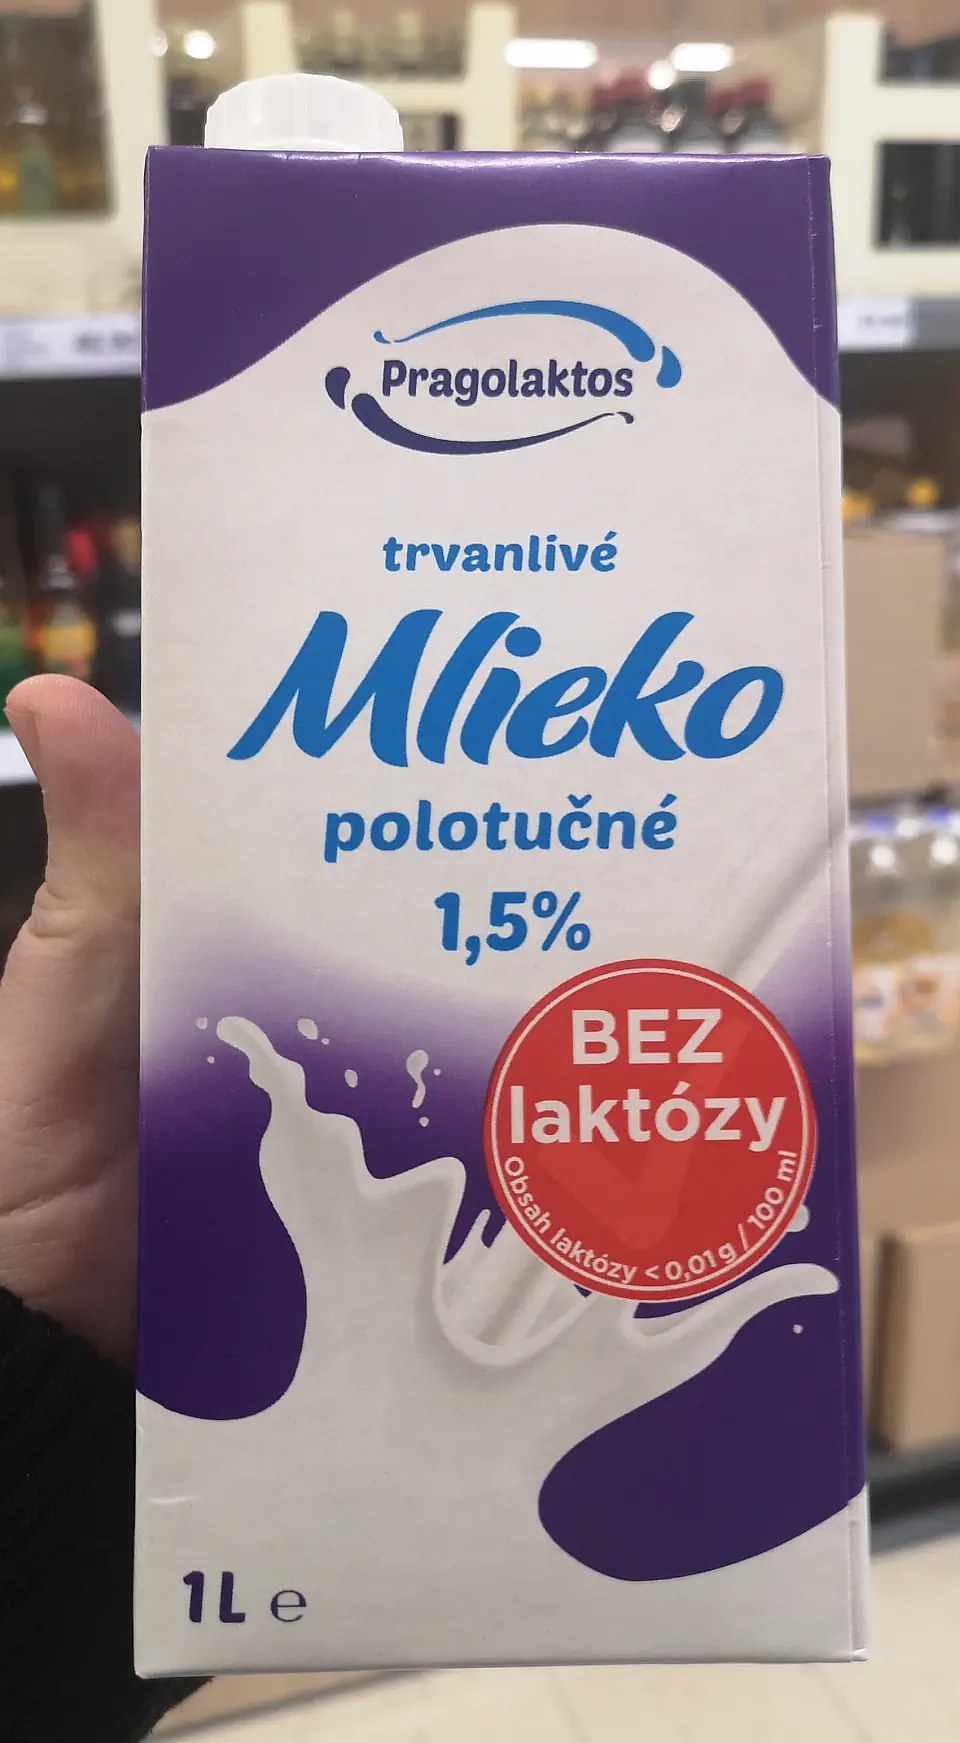 Pragolaktos Mléko bez laktózy